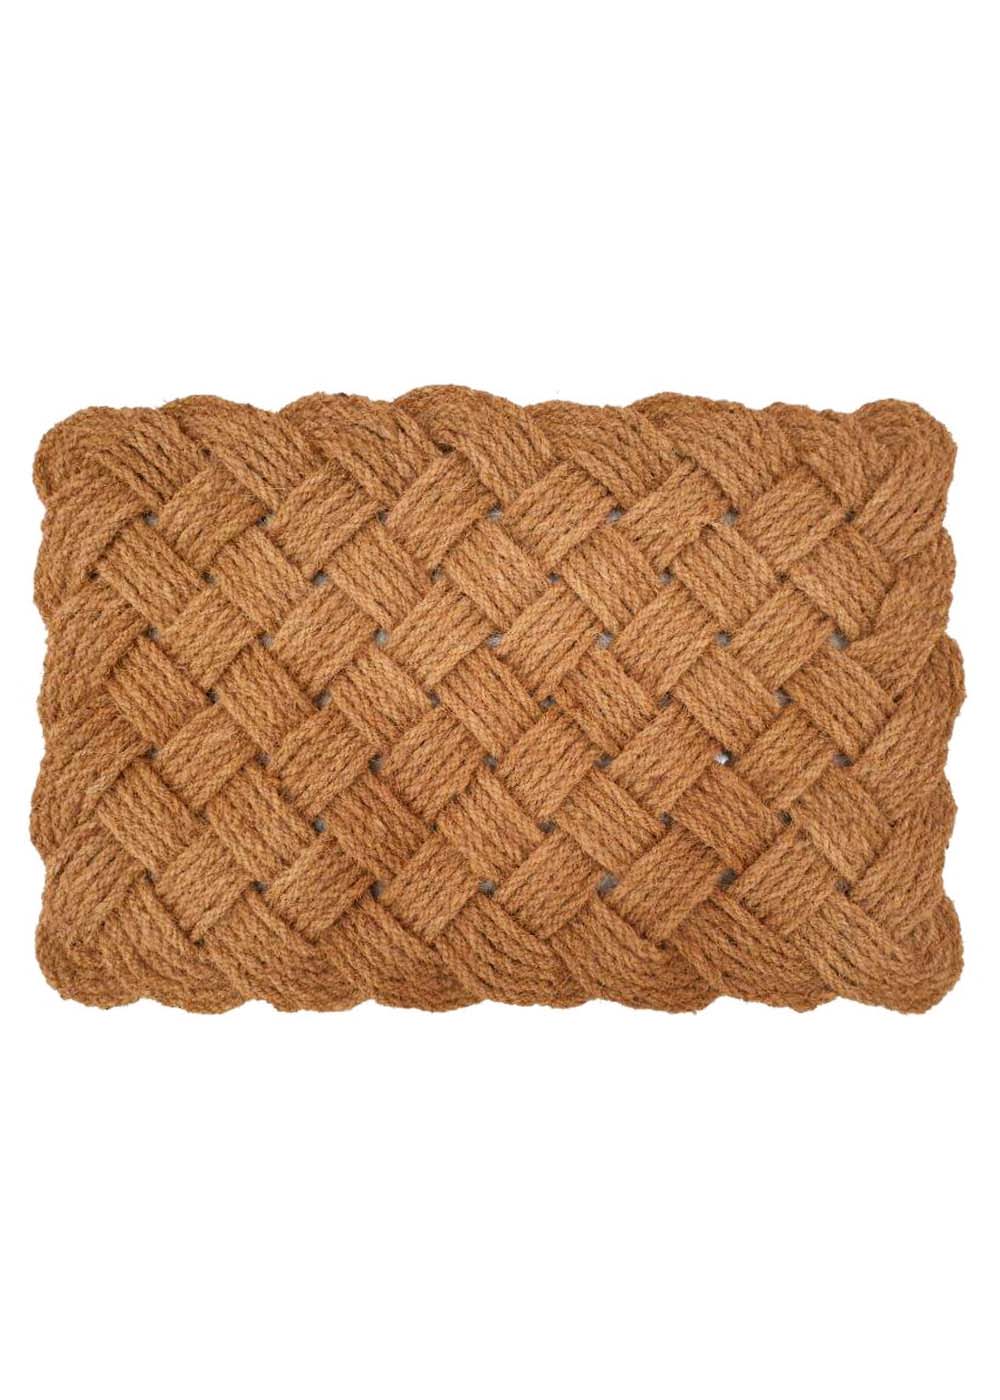 Coir Rope Woven Doormat - Criss Cross